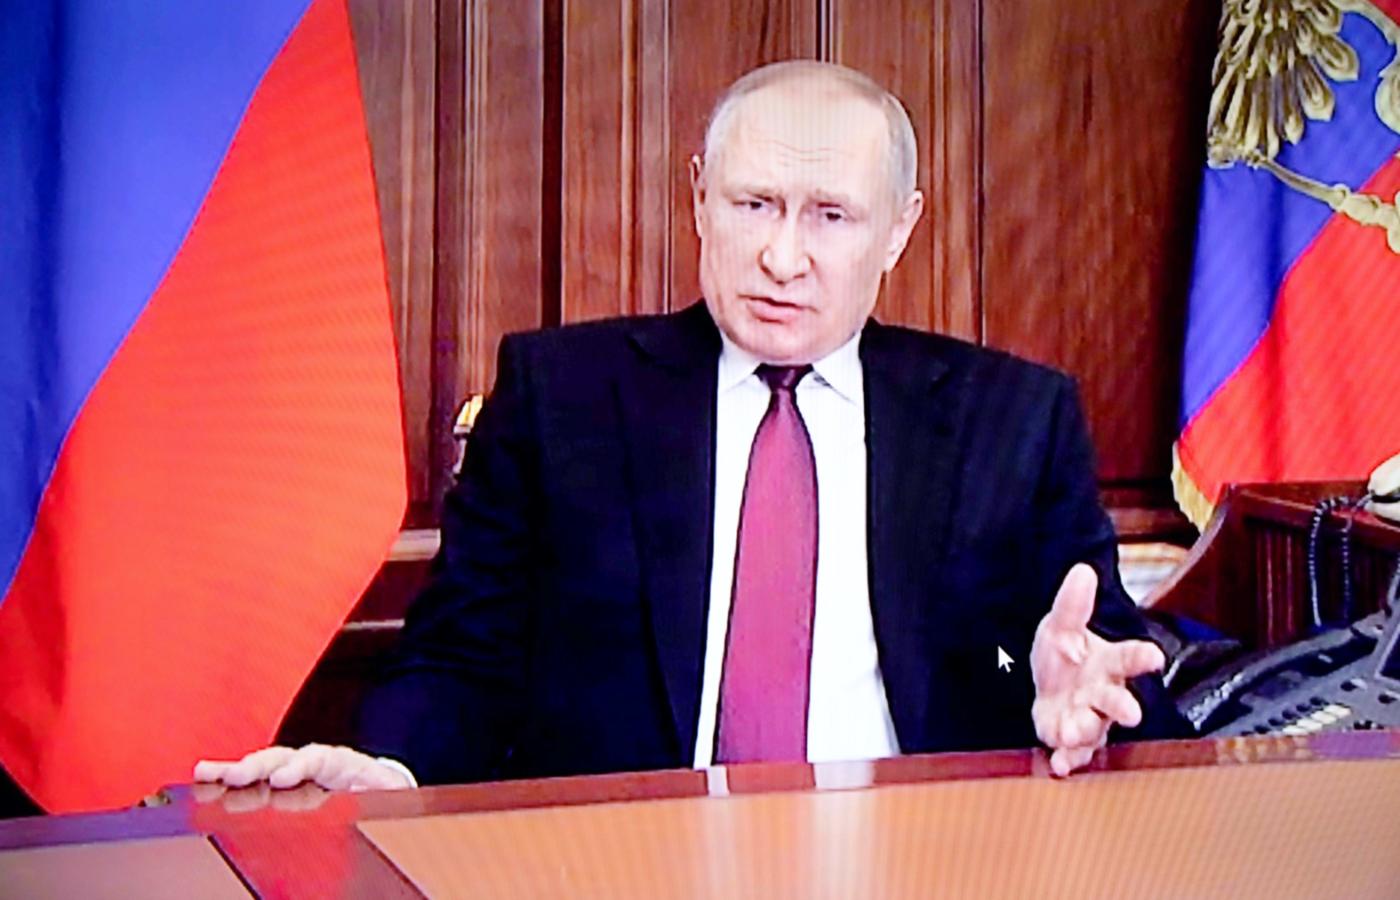 Przemówienie telewizyjne Władimira Putina